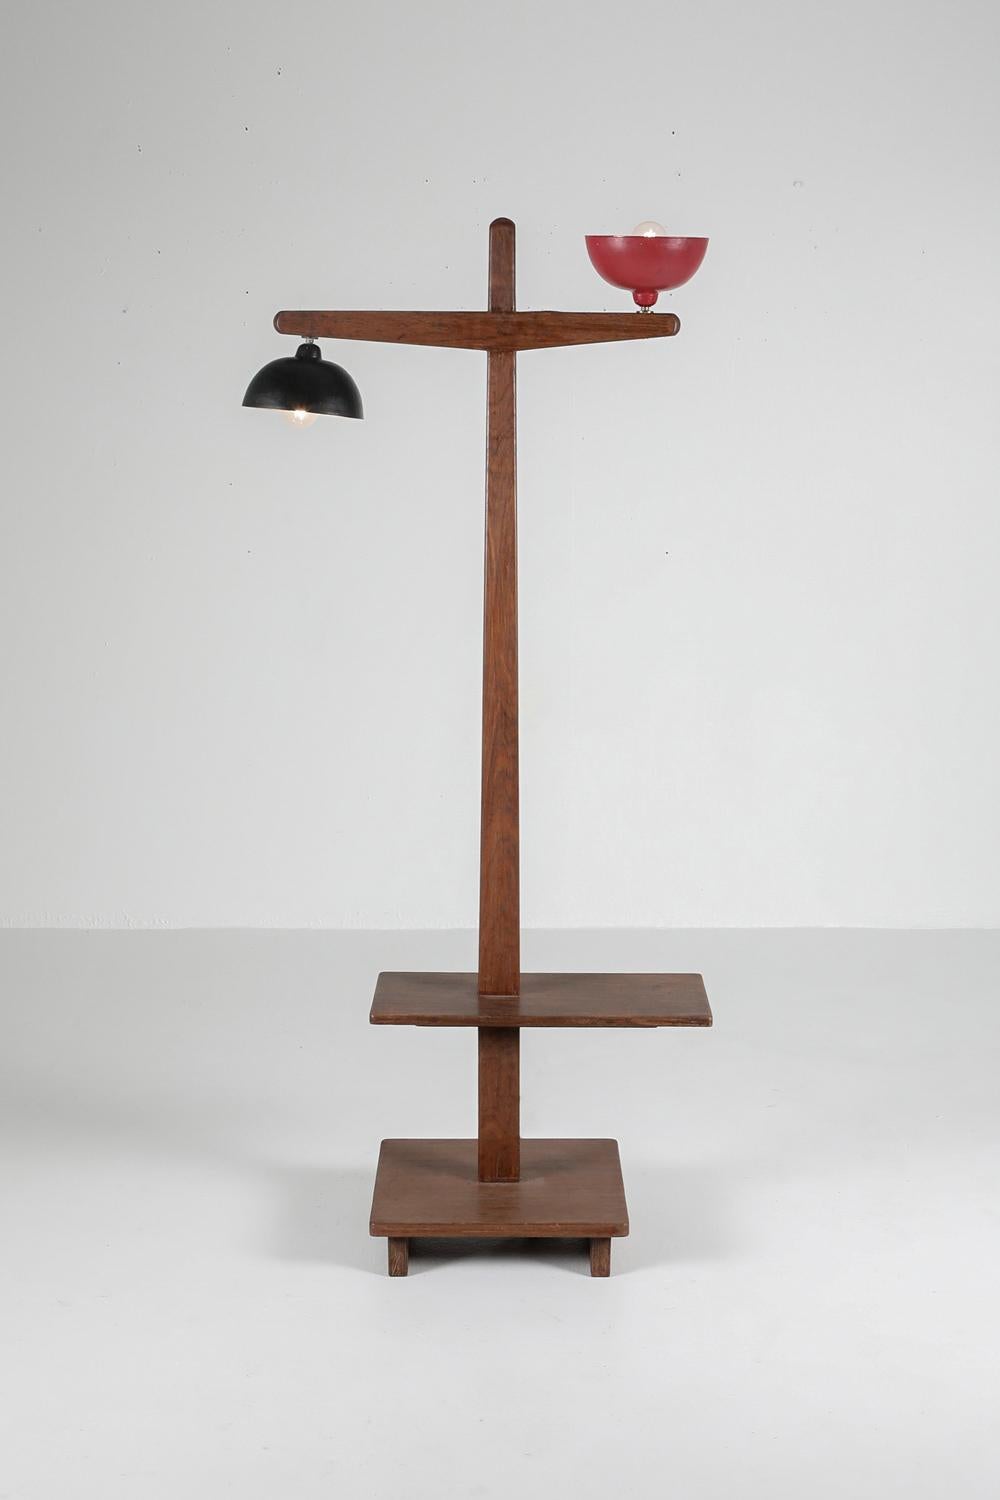 Mid-20th Century Pierre Jeanneret 'Standard Lamp' Pj-100101 in Solid Teak For Sale